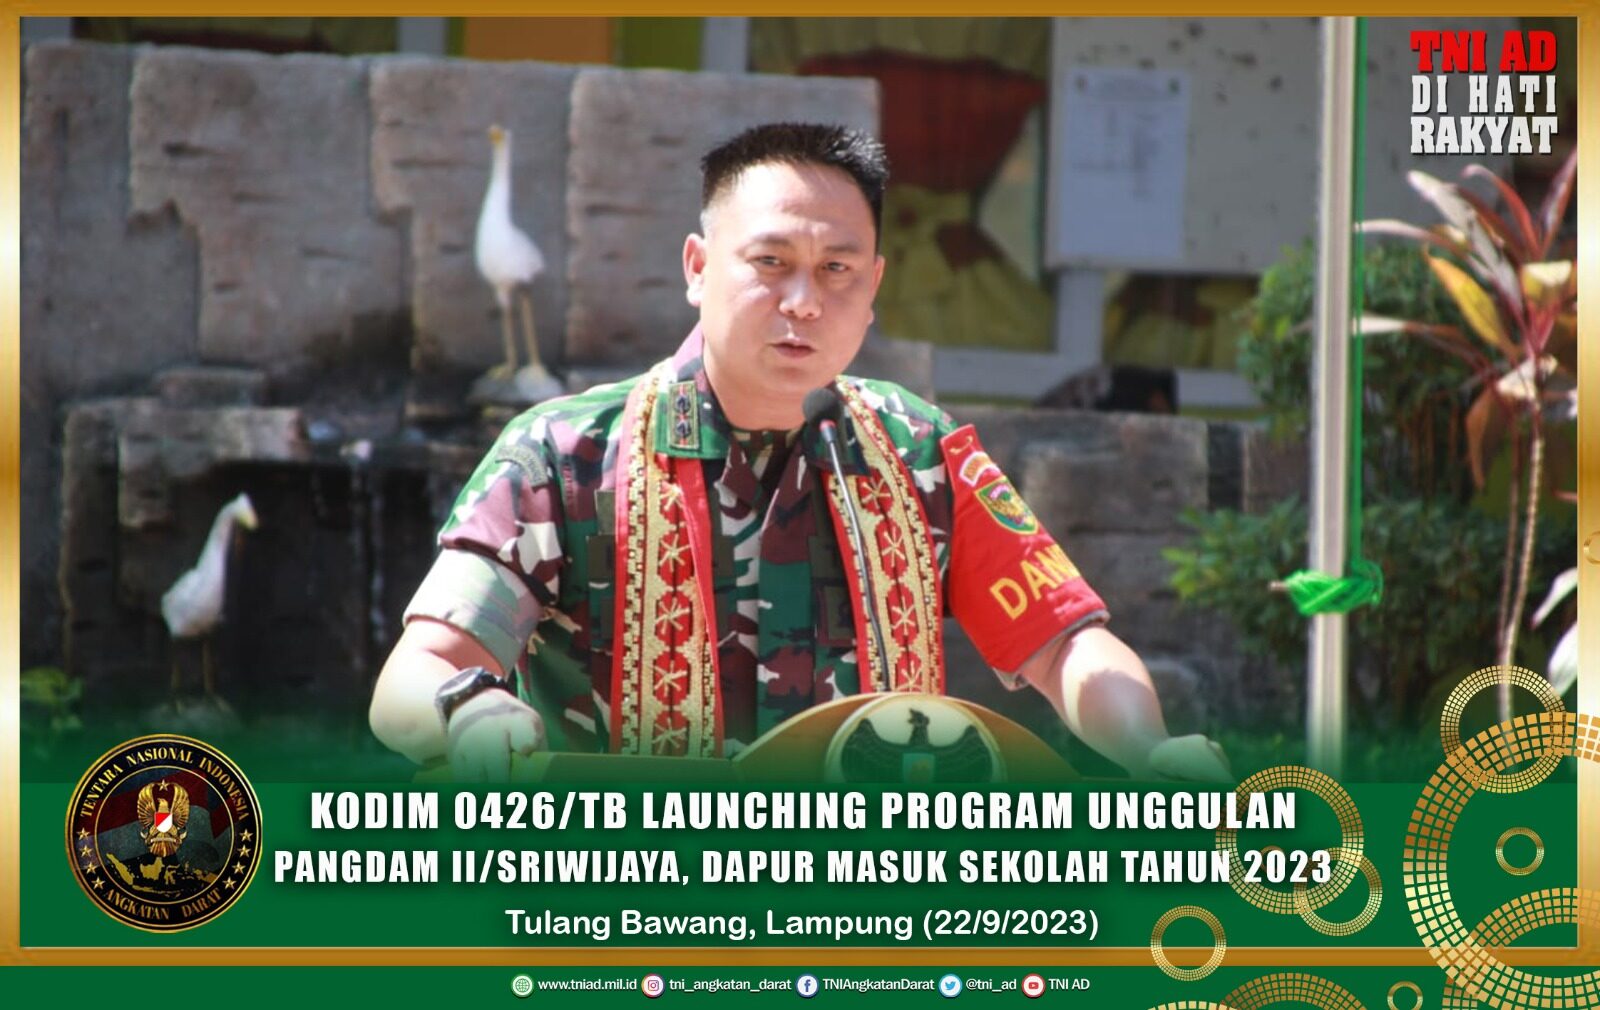 Kodim 0426/TB Launching Program Unggulan Pangdam ll/Sriwijaya, Dapur Masuk Sekolah Tahun 2023